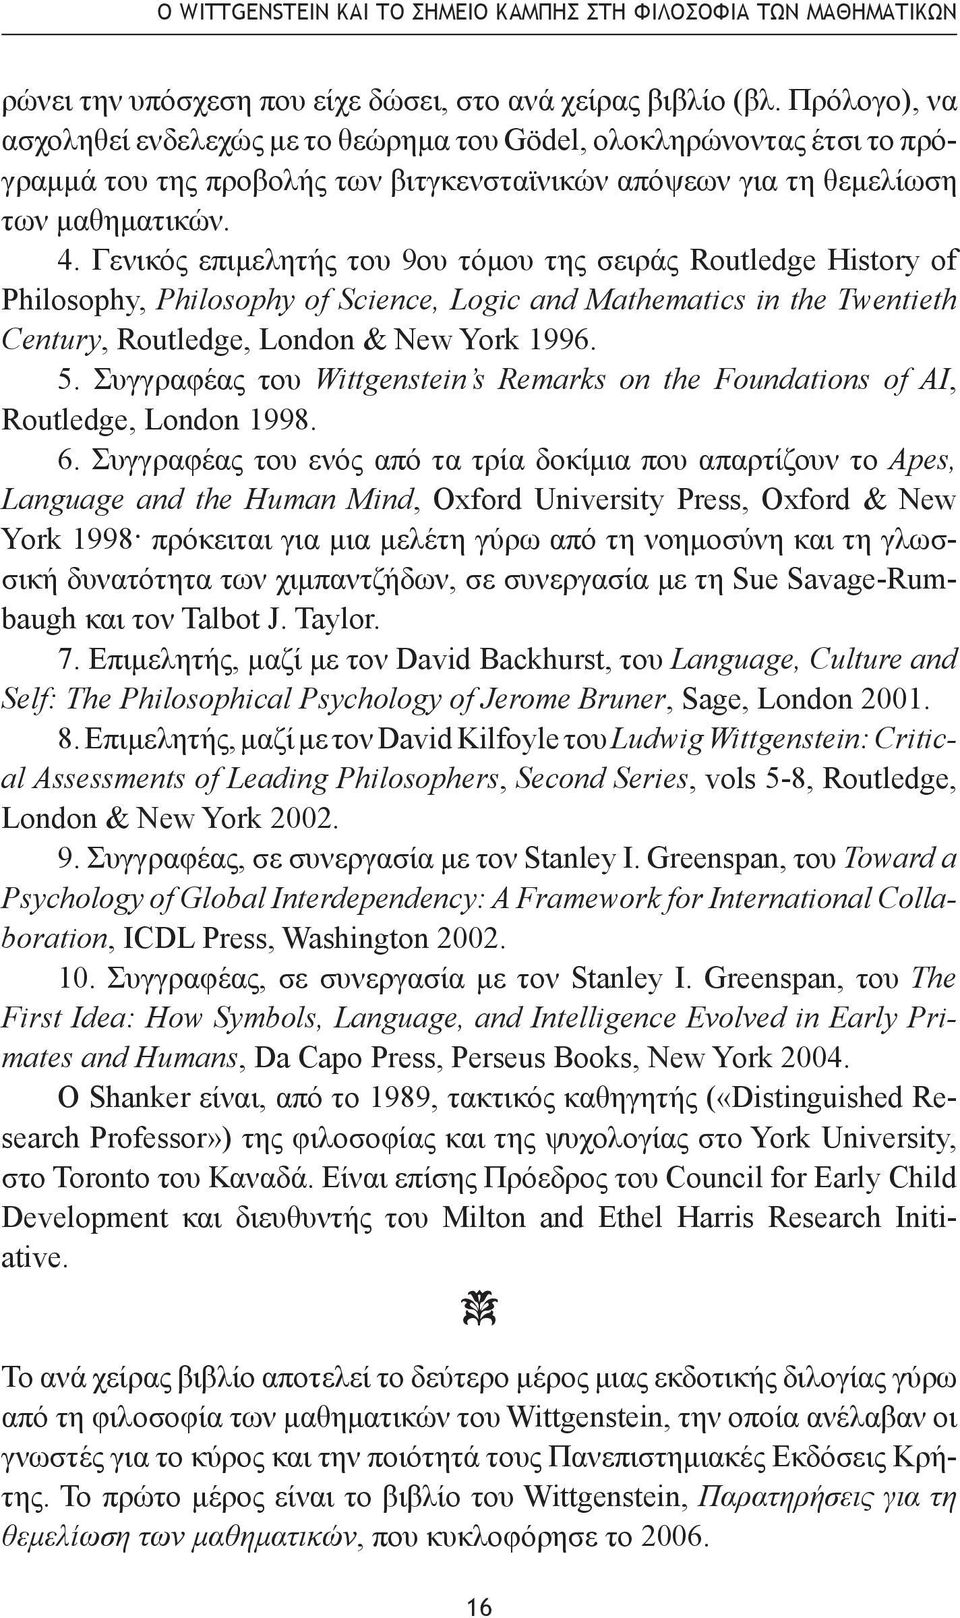 Γενικός επιμελητής του 9ου τόμου της σειράς Routledge History of Philosophy, Philosophy of Science, Logic and Mathematics in the Twentieth Century, Routledge, London & New York 1996. 5.